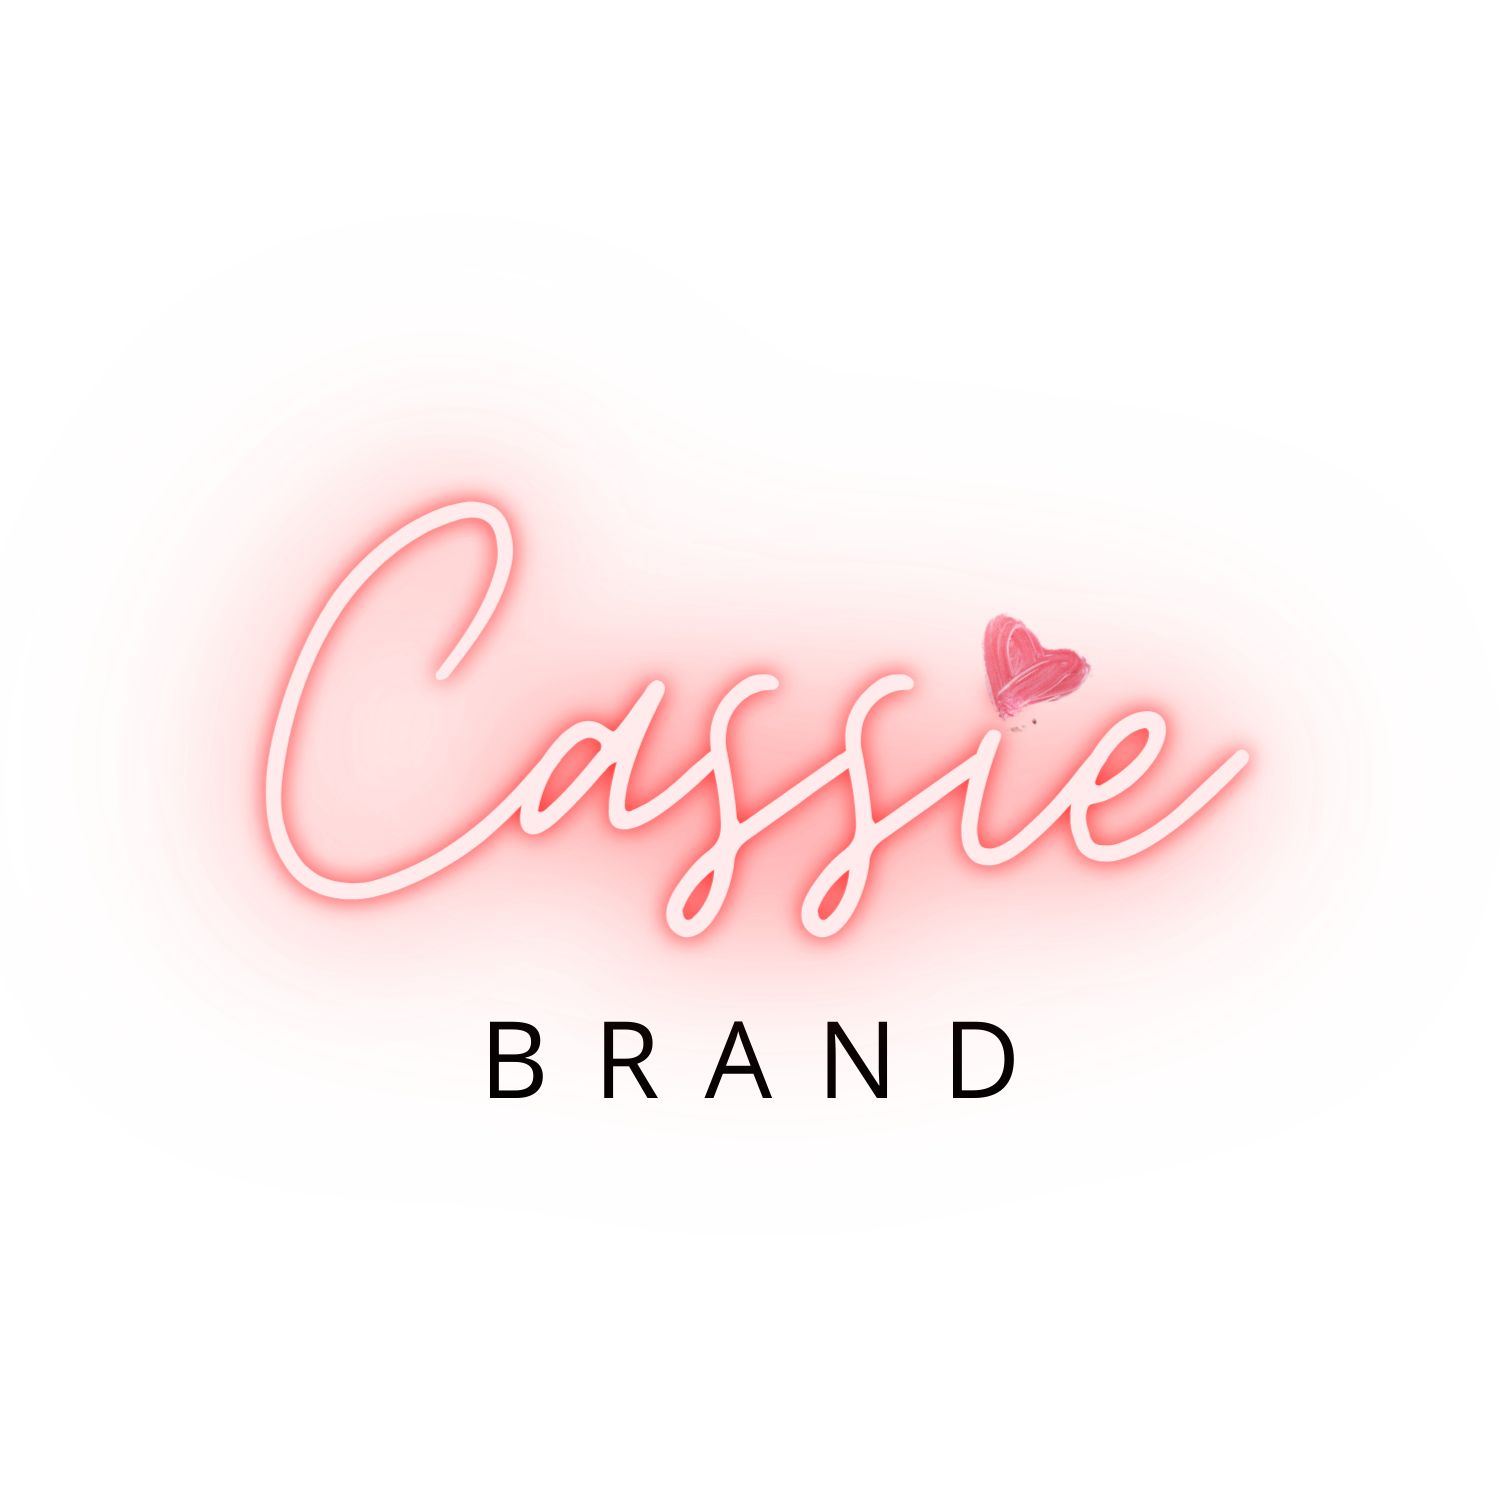 Cassie brand Livraison Dom tom